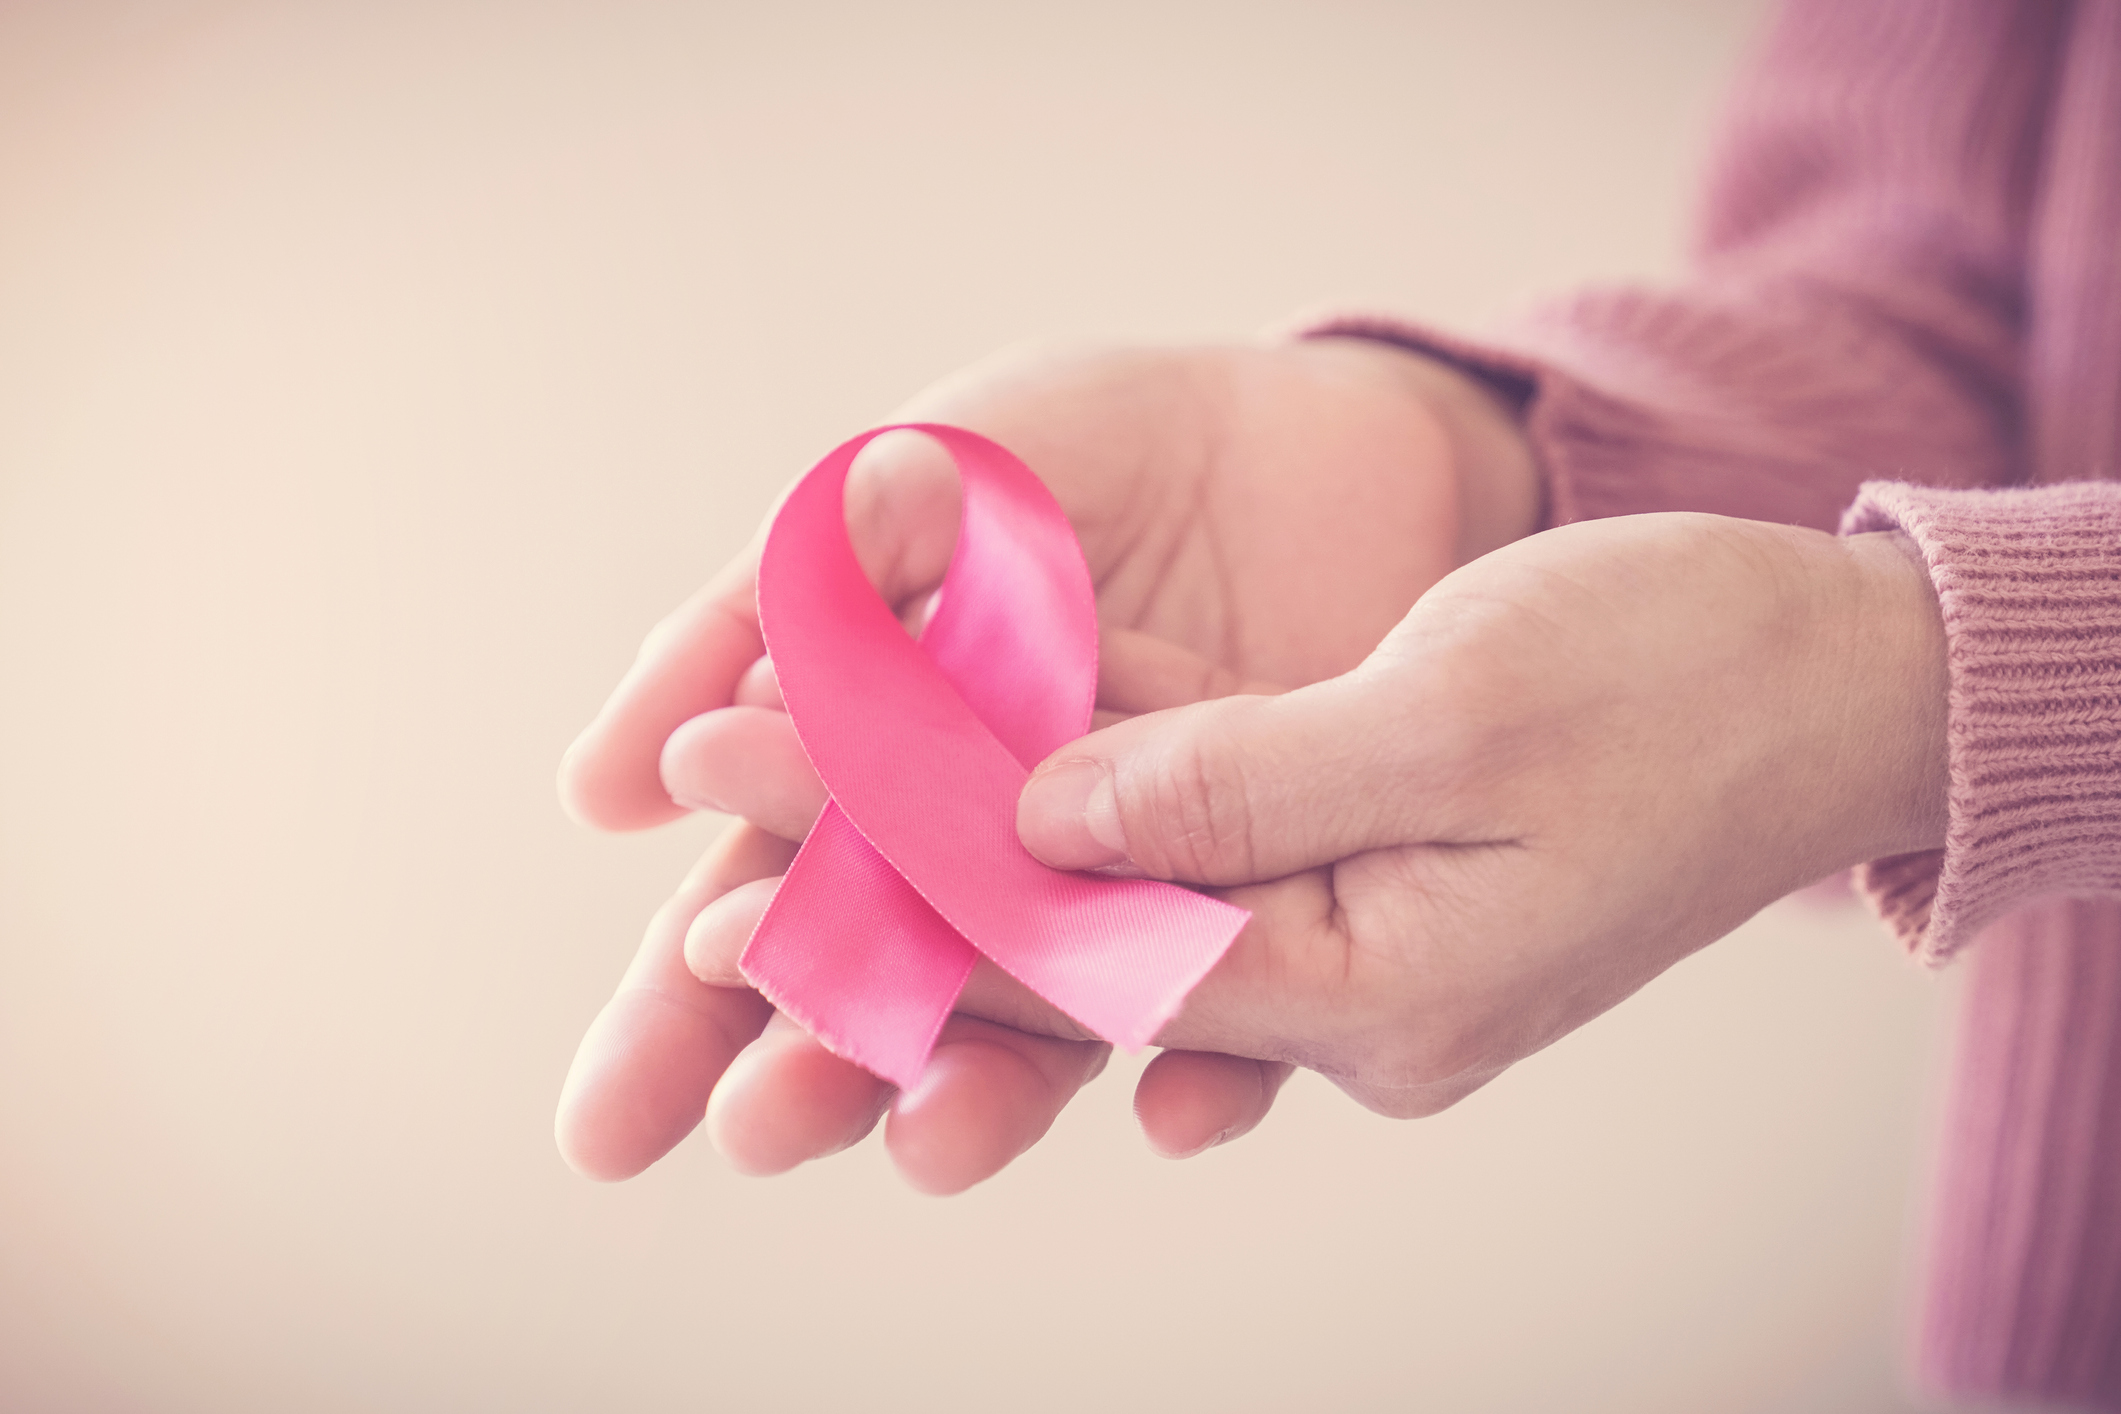 Câncer de mama: qual a relação da doença com a reposição hormonal? - por: Dra. Isabella Tartari